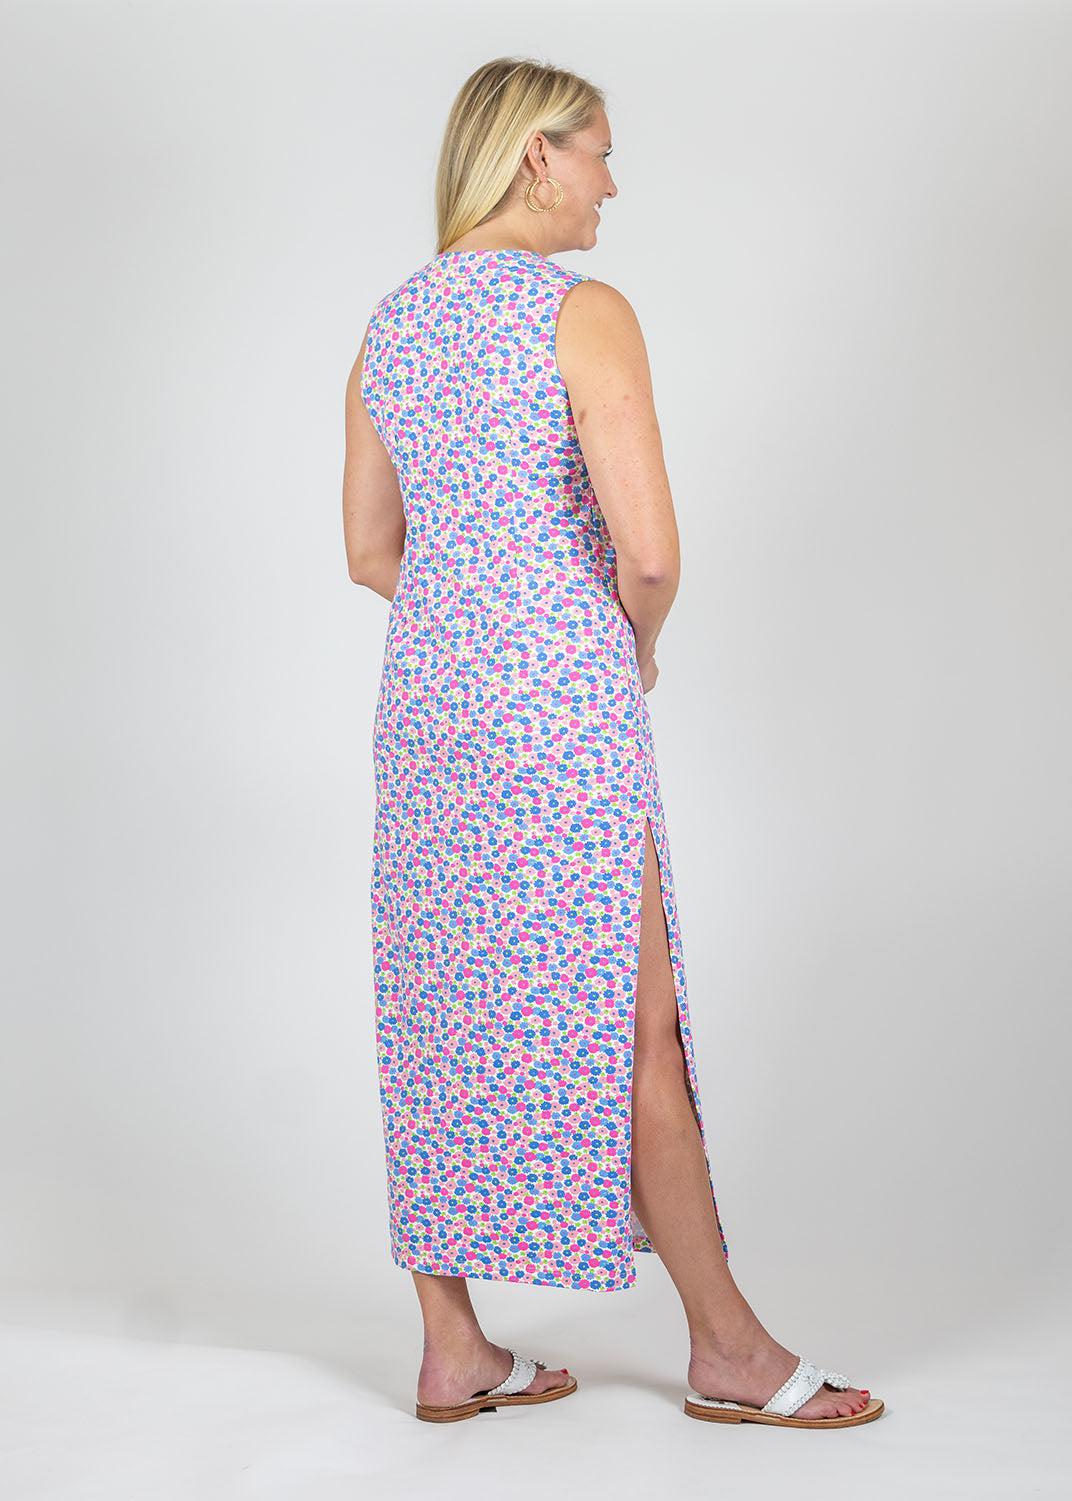 Lucille Maxi Dress - Field of Dahlias Blue/Pink